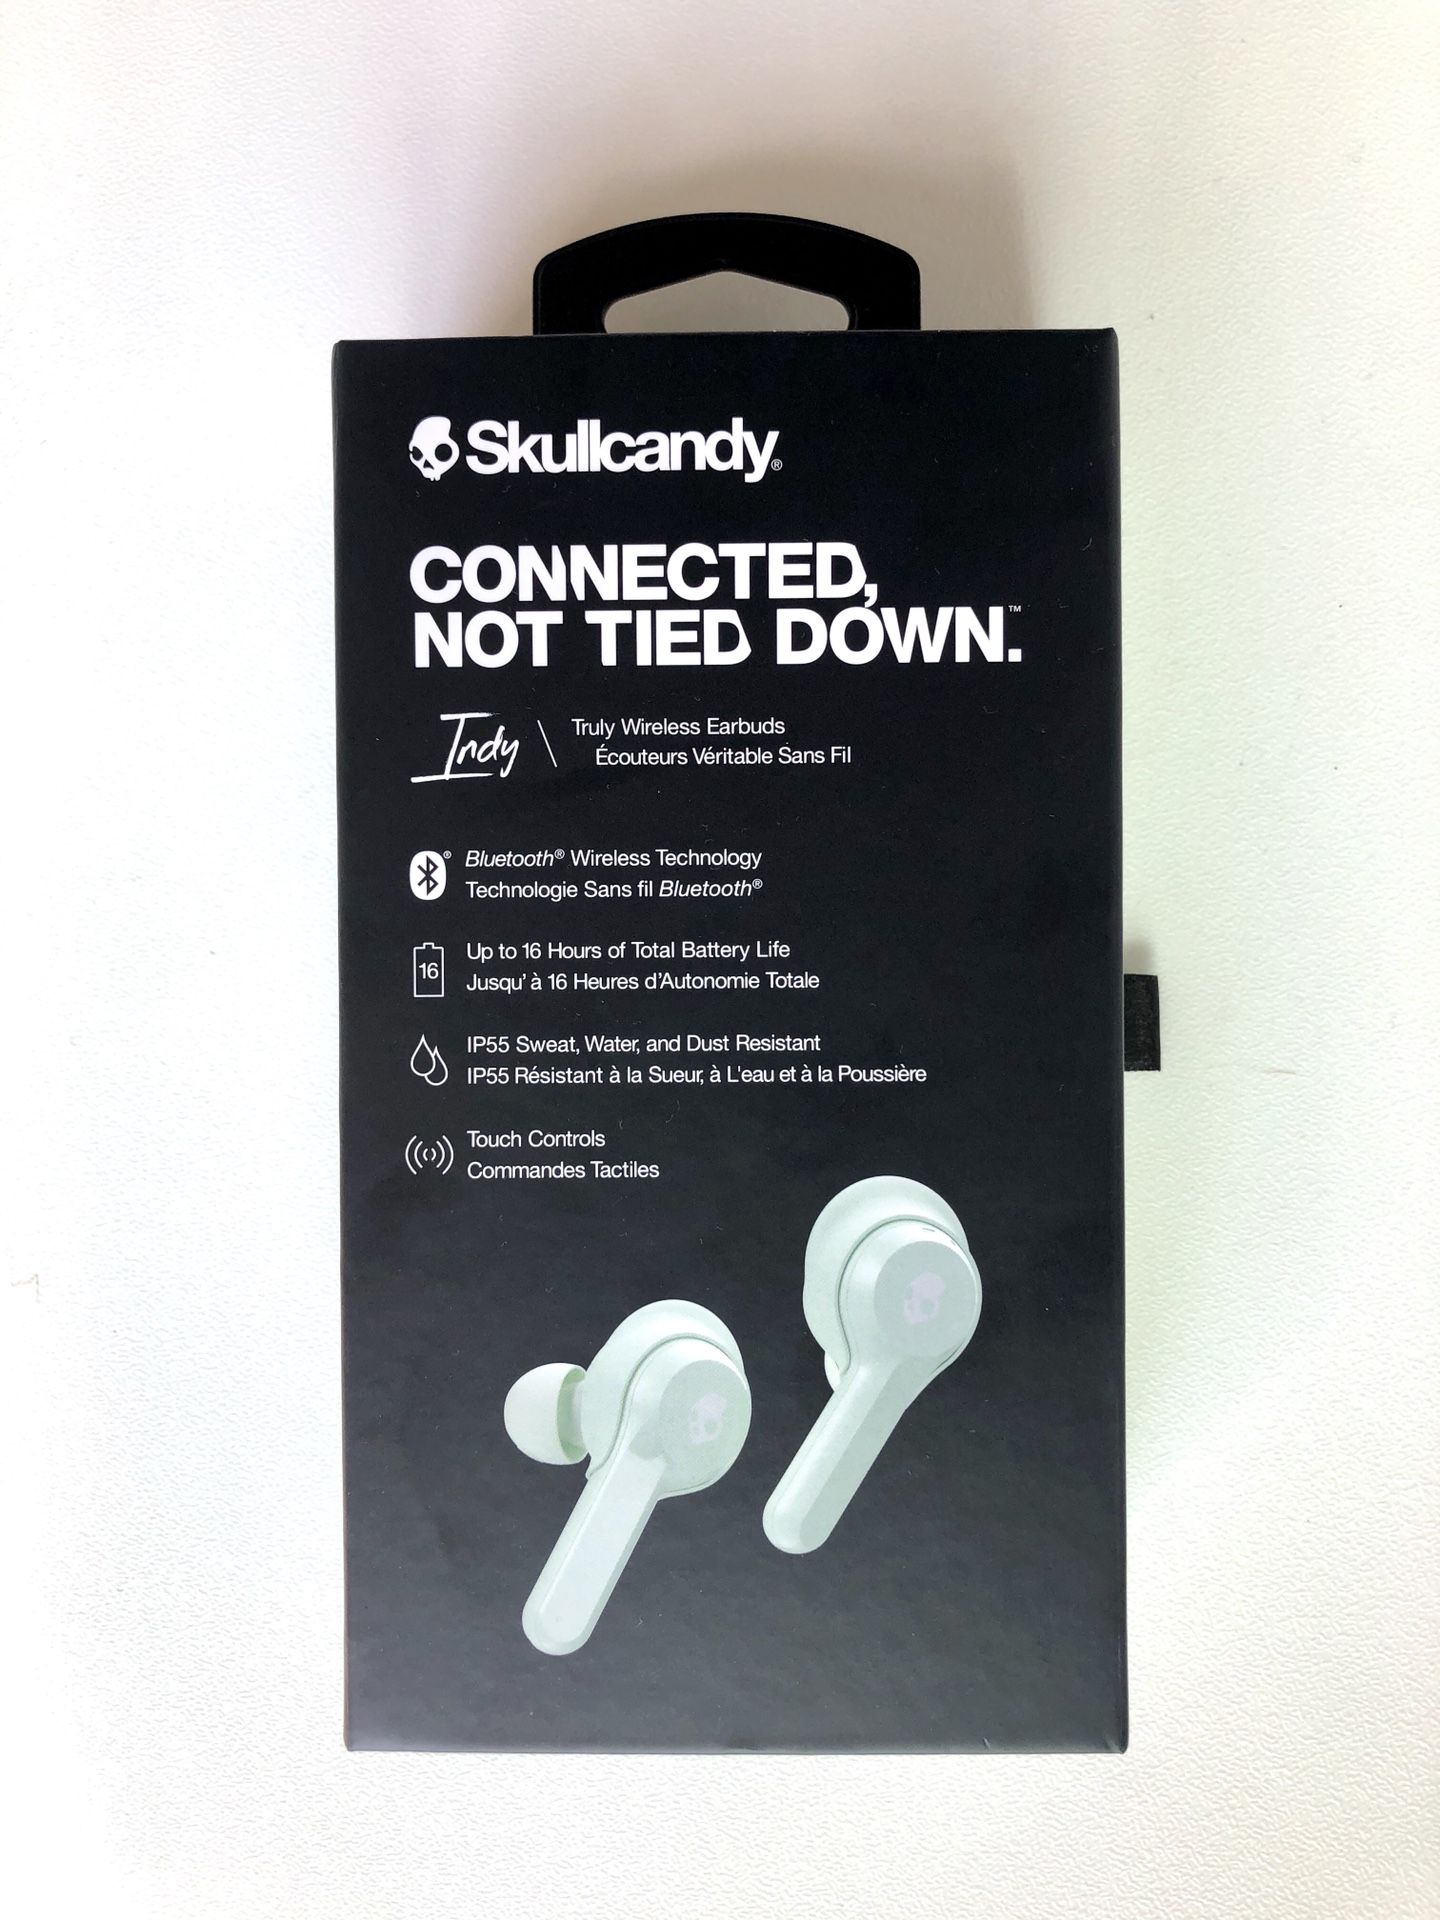 Skullcandy wireless earbuds